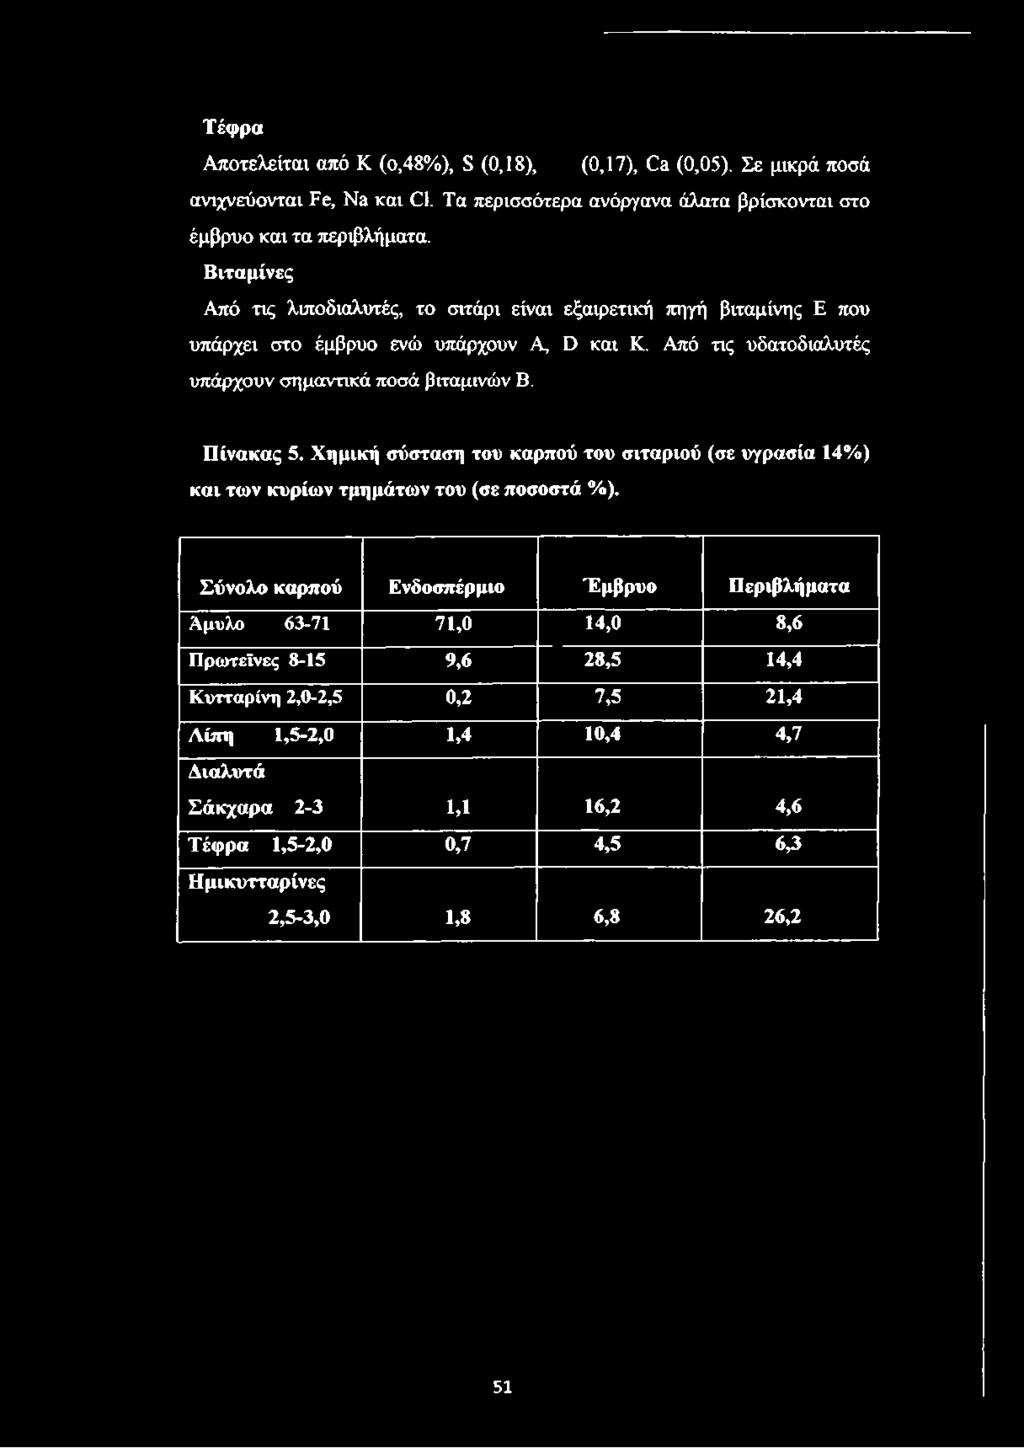 Χημική σύσταση του καρπού του σιταριού (σε υγρασία 14%) και των κυρίων τμημάτων του (σε ποσοστά %).